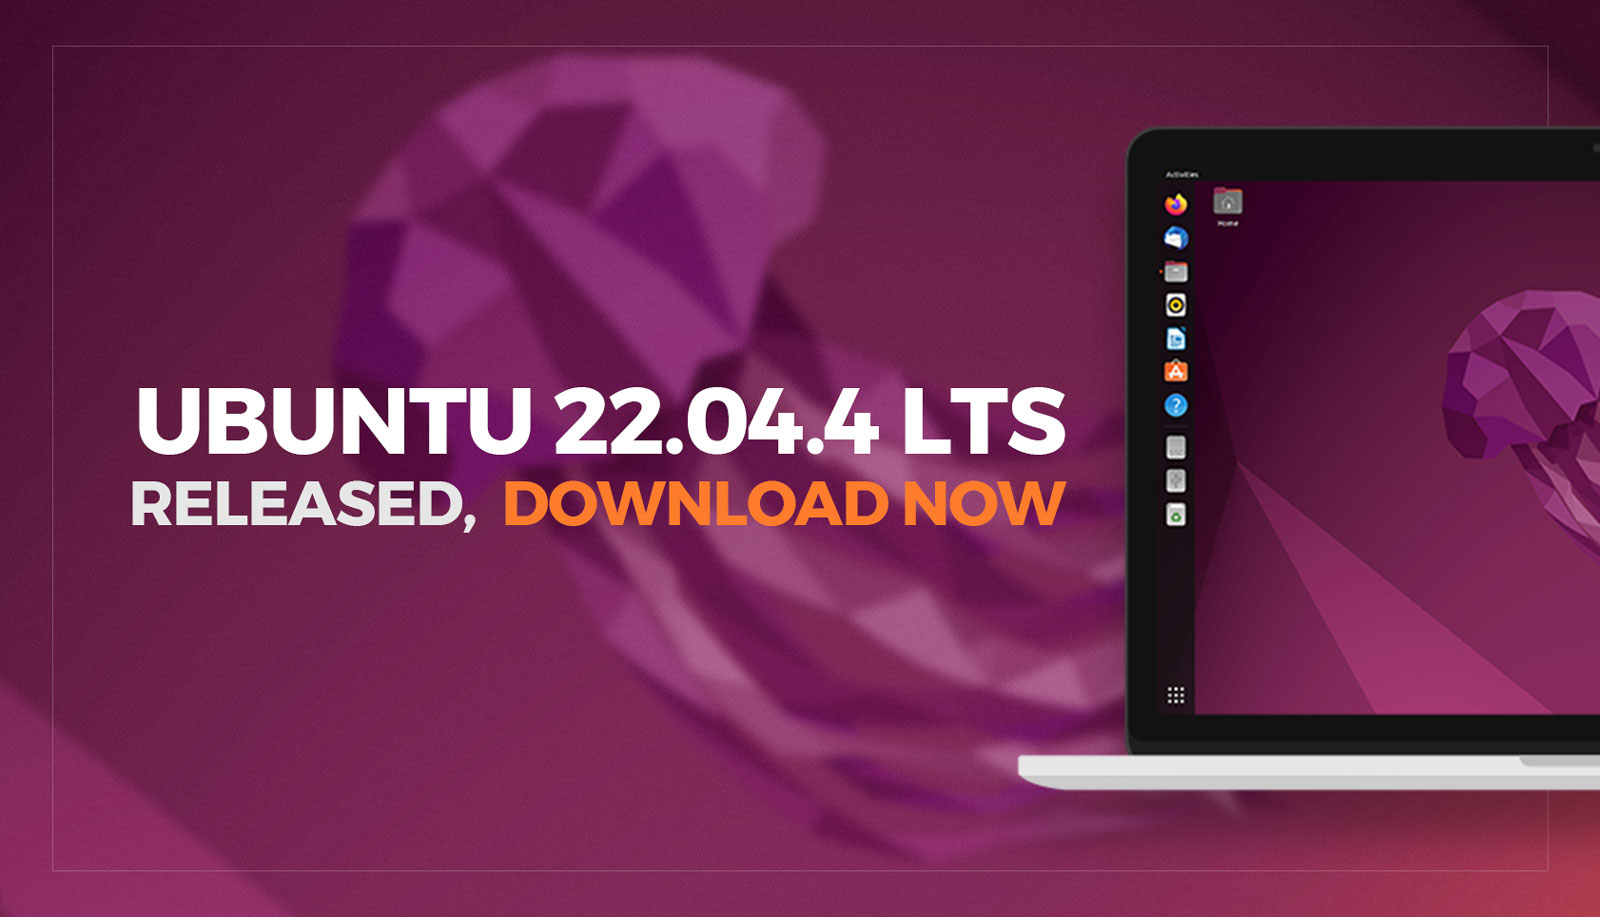 Ubuntu 22.04.4 LTS is beschikbaar om te downloaden